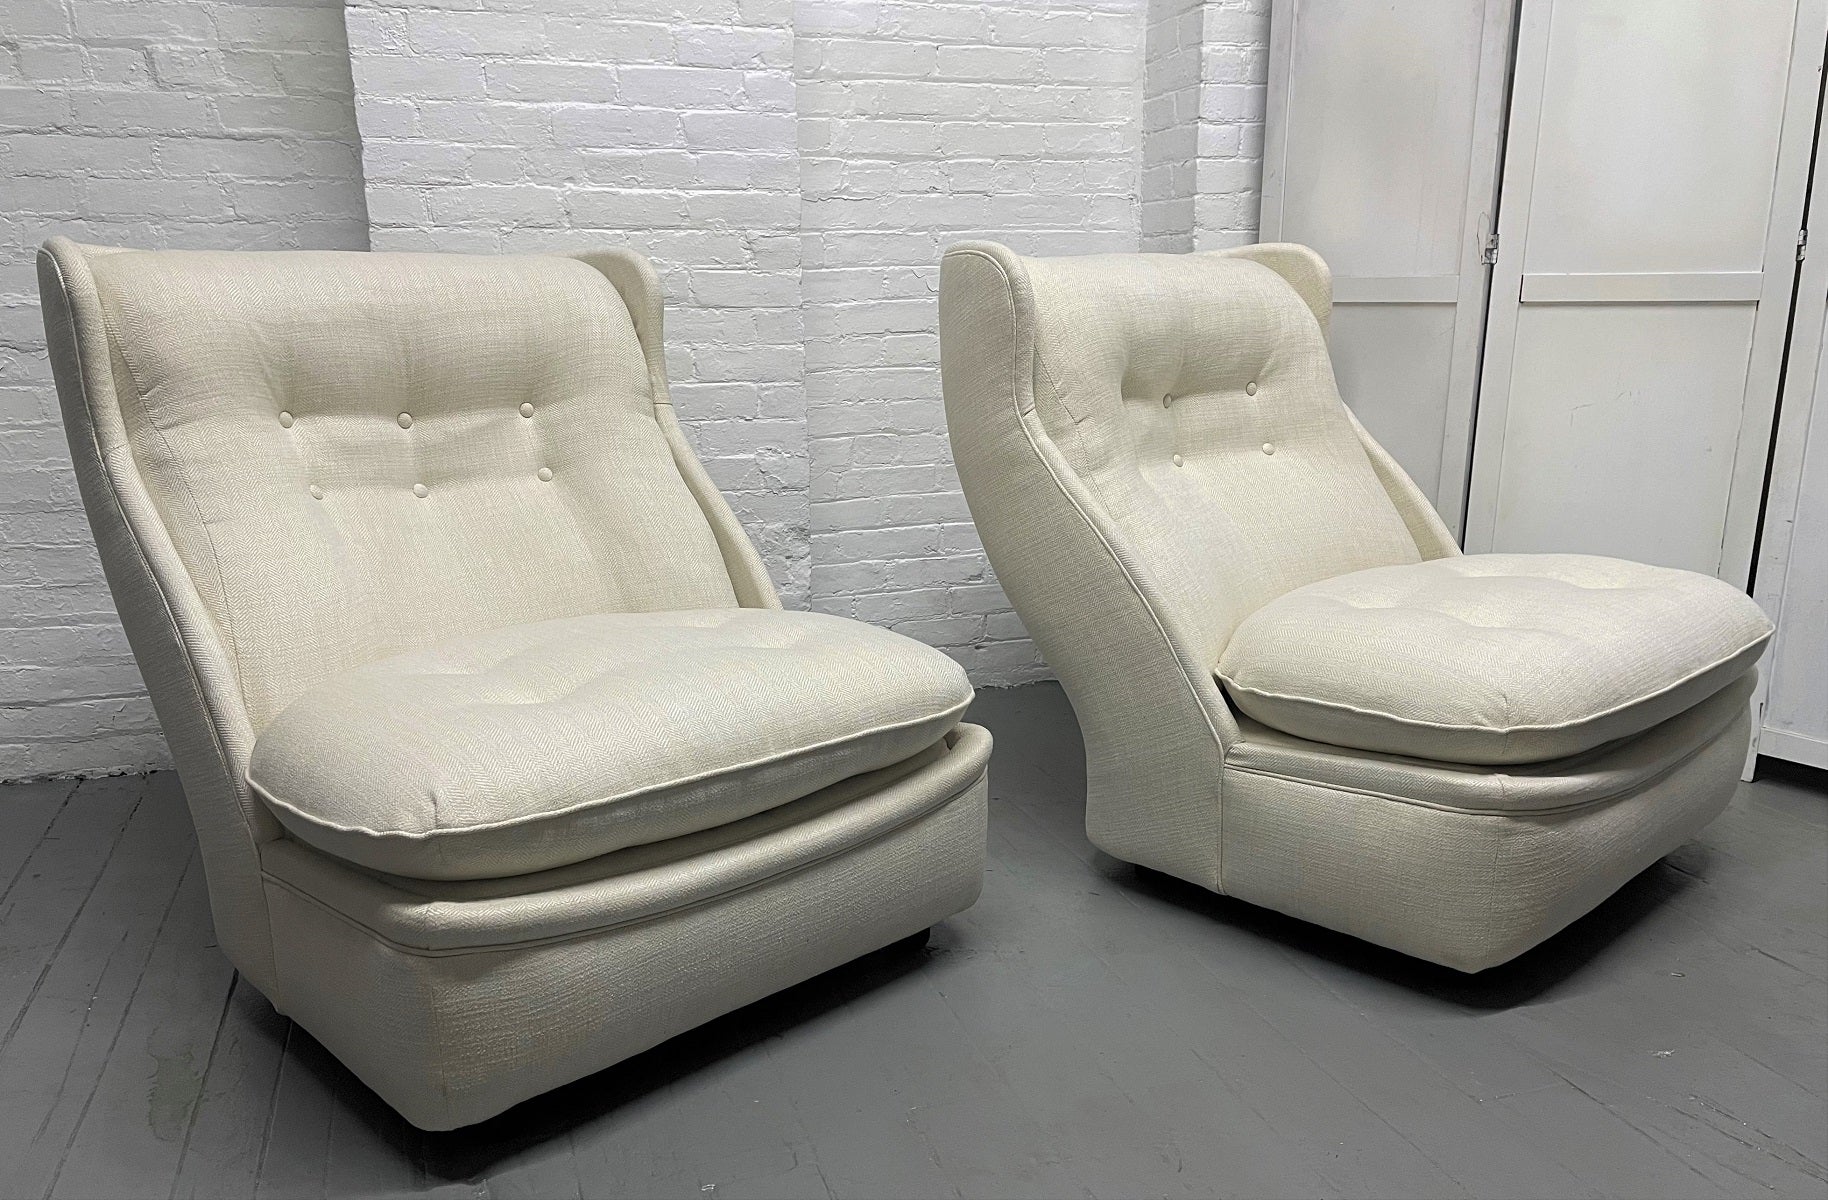 Paire de fauteuils de salon surdimensionnés des années 1960. Les chaises sont nouvellement rembourrées et leurs pieds sont laqués en noir.